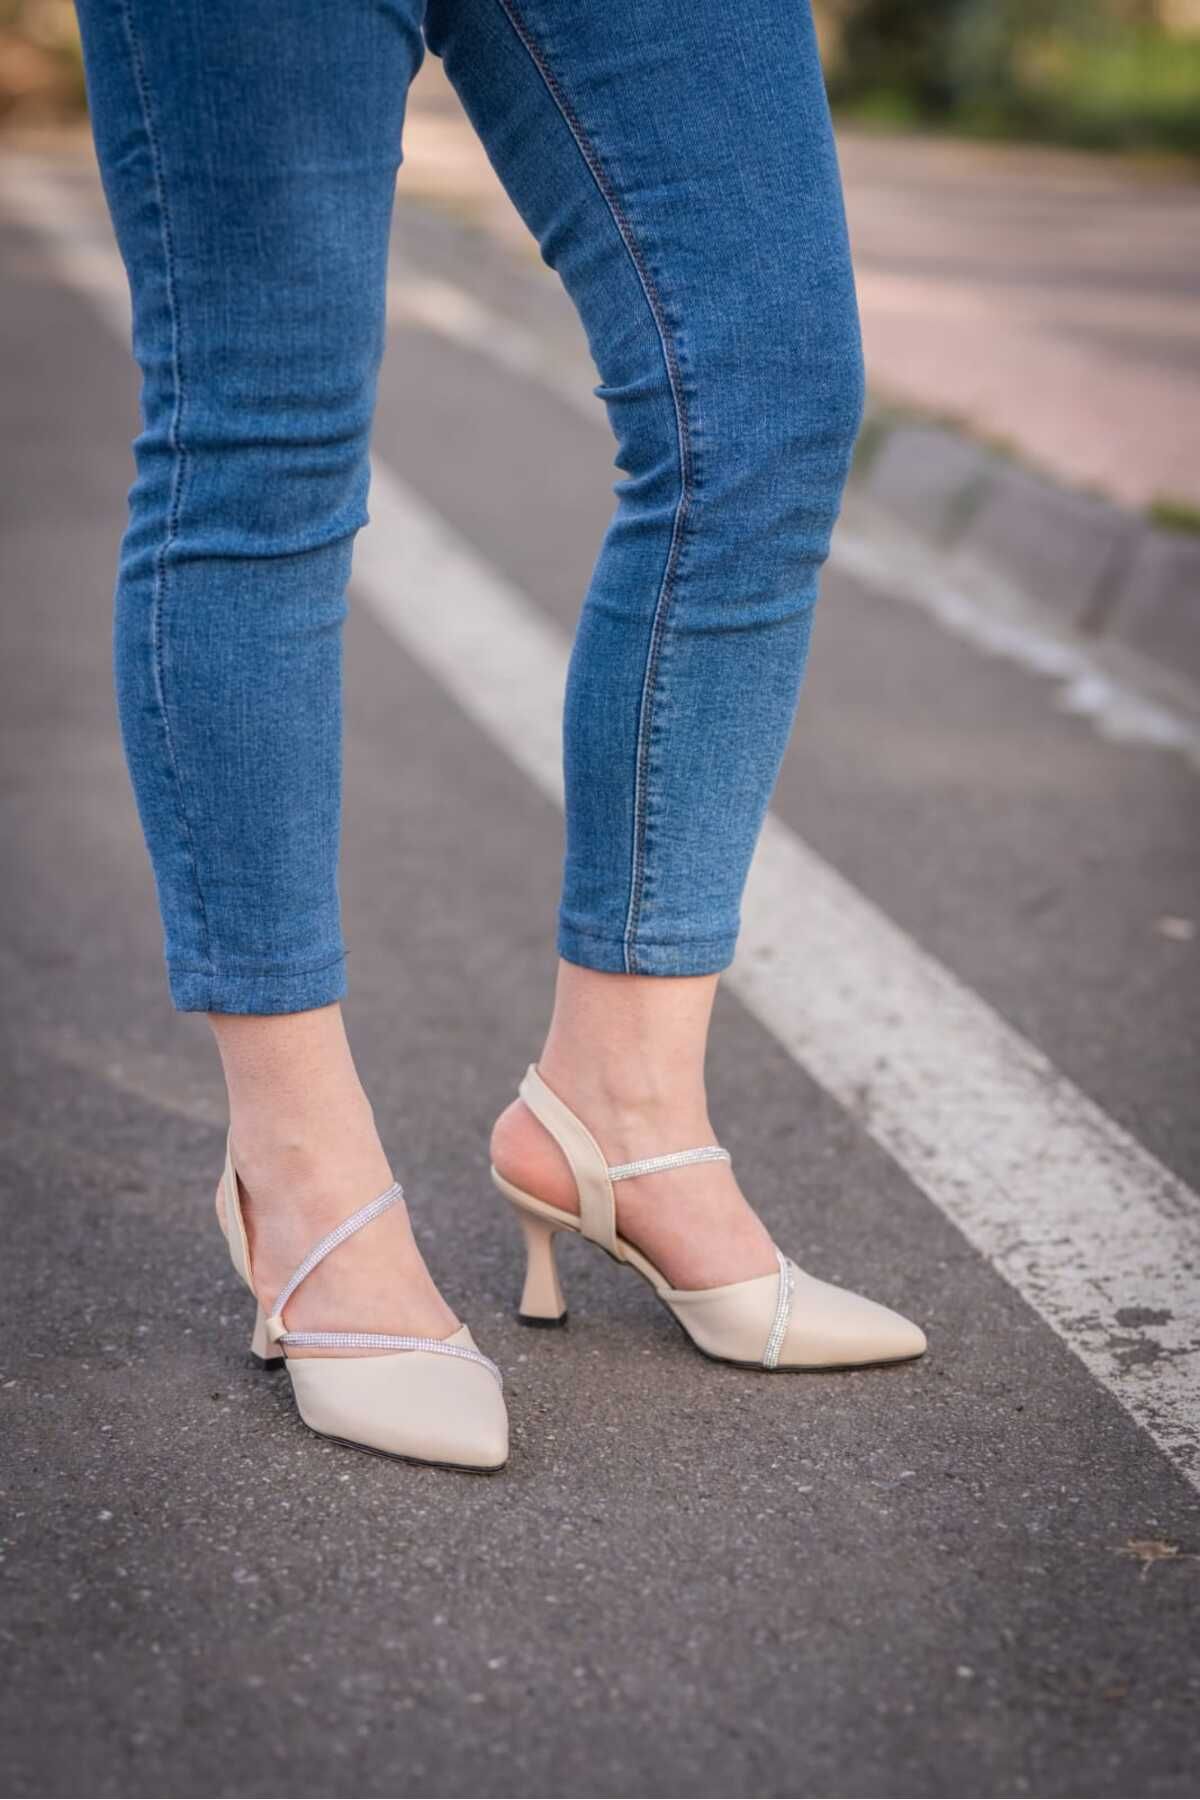 Weynes Kadın Krem  Kalem Topuklu 7 Cm Taşlı Günlük Topuklu Ayakkabı  Wsb0706